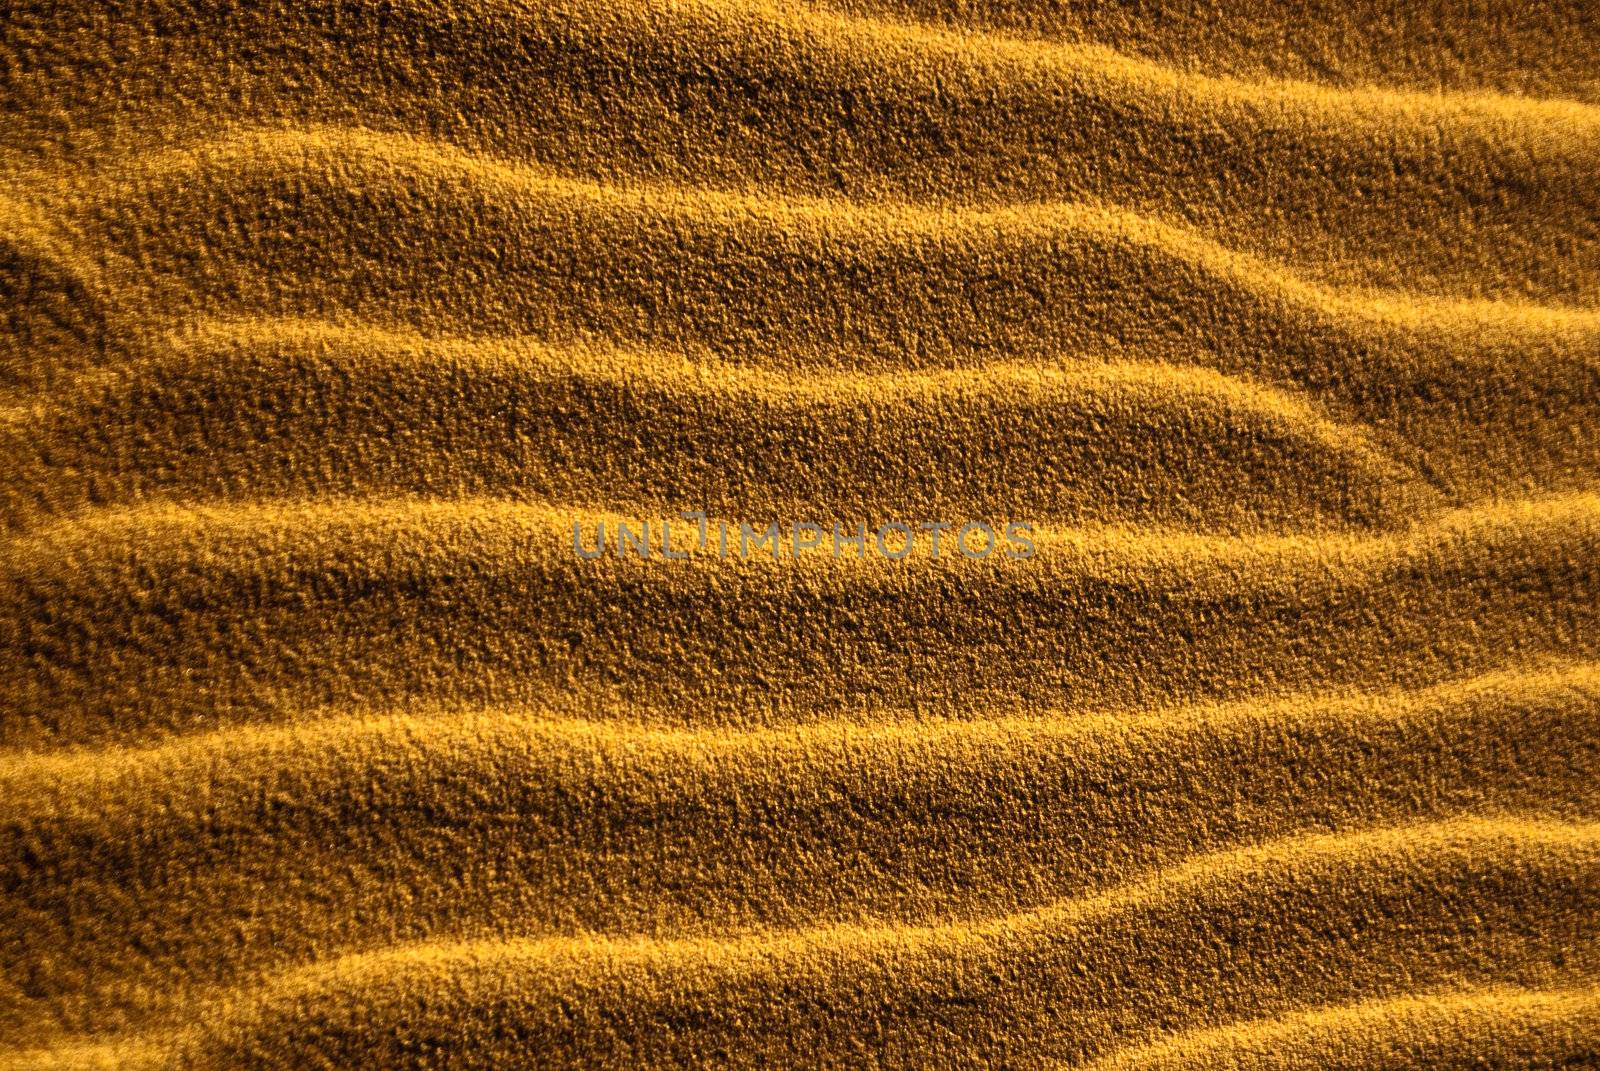 Desert sand ripples form sidewinder trails